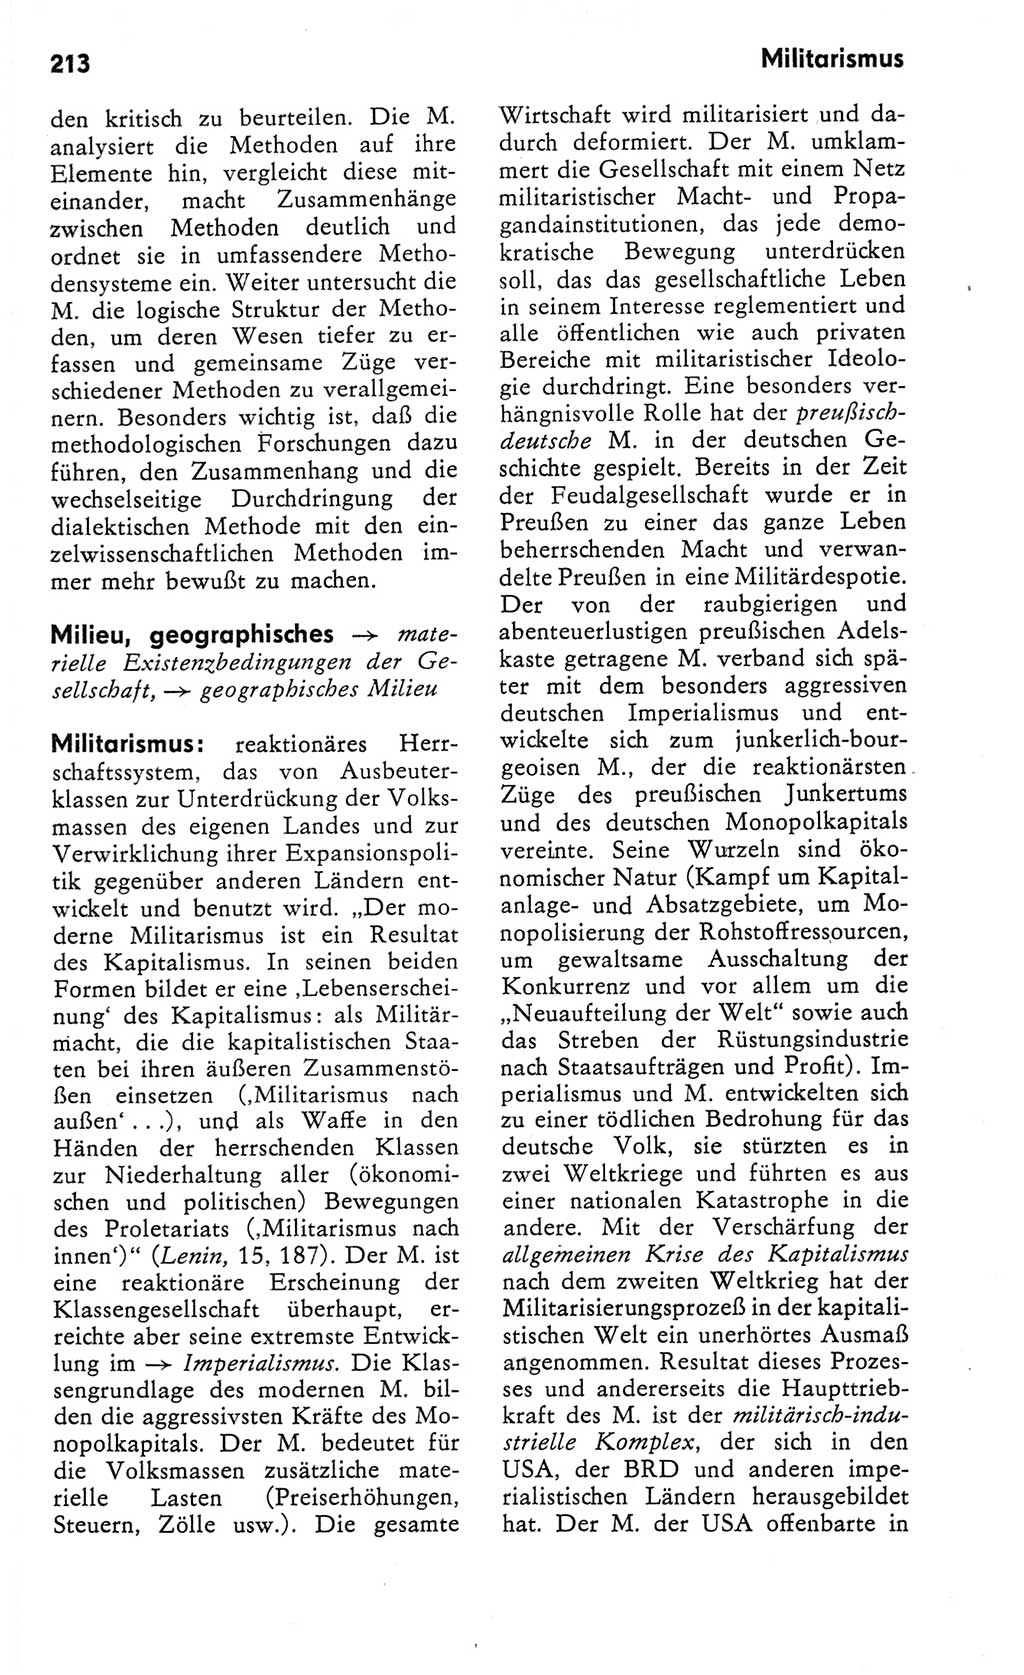 Kleines Wörterbuch der marxistisch-leninistischen Philosophie [Deutsche Demokratische Republik (DDR)] 1982, Seite 213 (Kl. Wb. ML Phil. DDR 1982, S. 213)